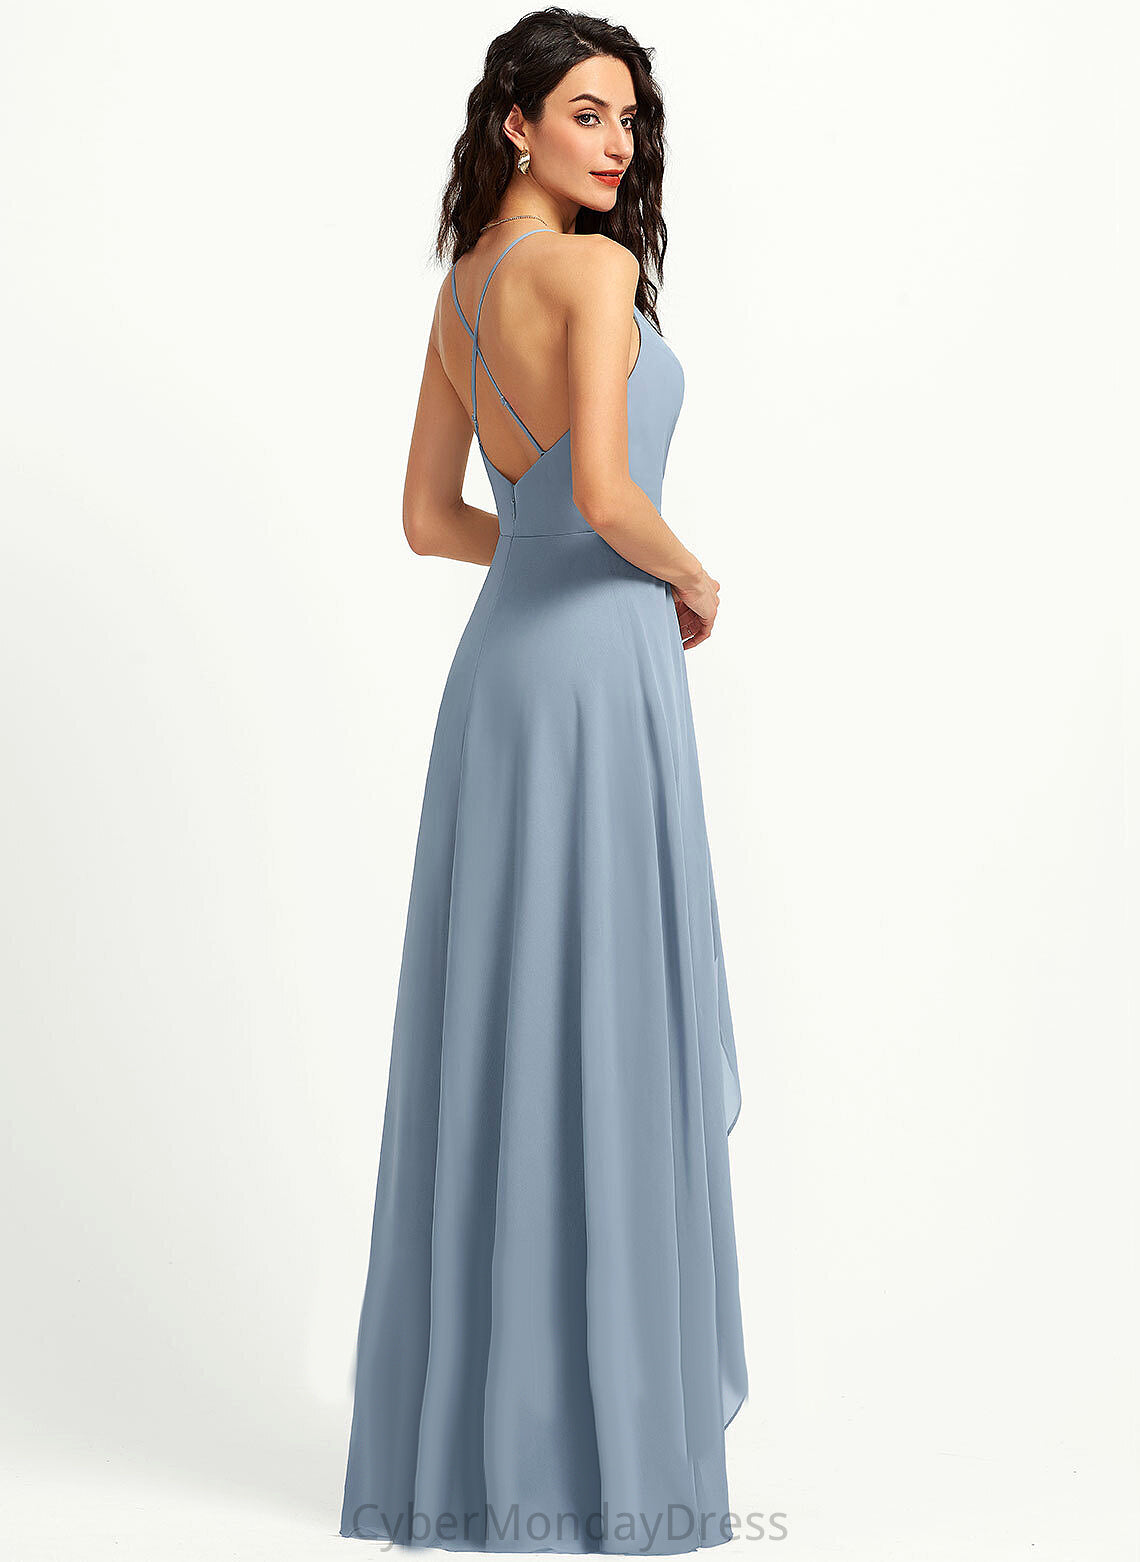 V-neck A-Line Neckline Fabric Straps Length Asymmetrical Silhouette Carissa Natural Waist Floor Length Sleeveless Bridesmaid Dresses